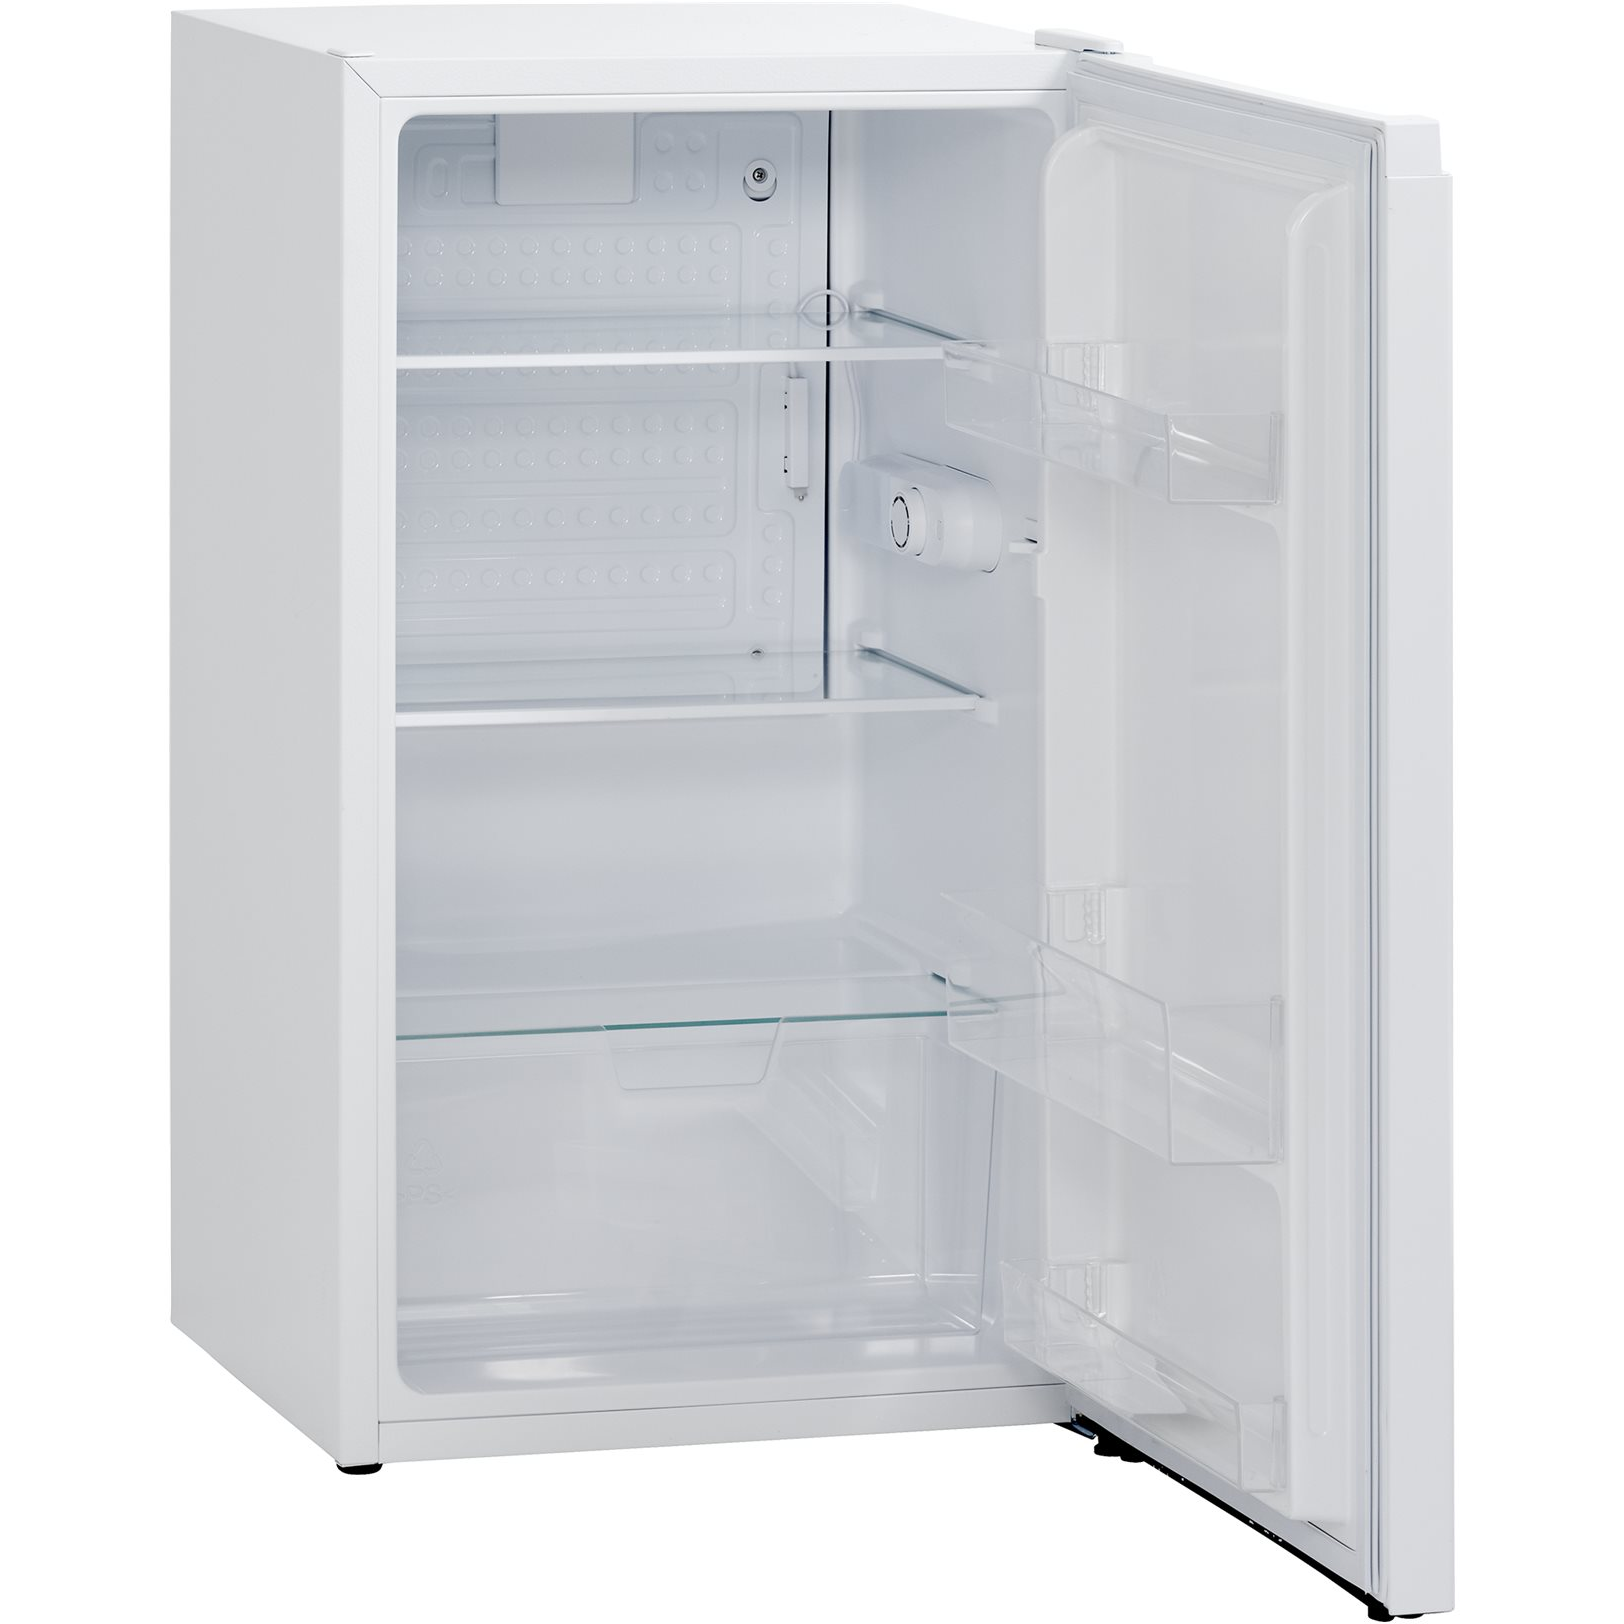 Scandomestic SKS92WE - Fritstående køleskab